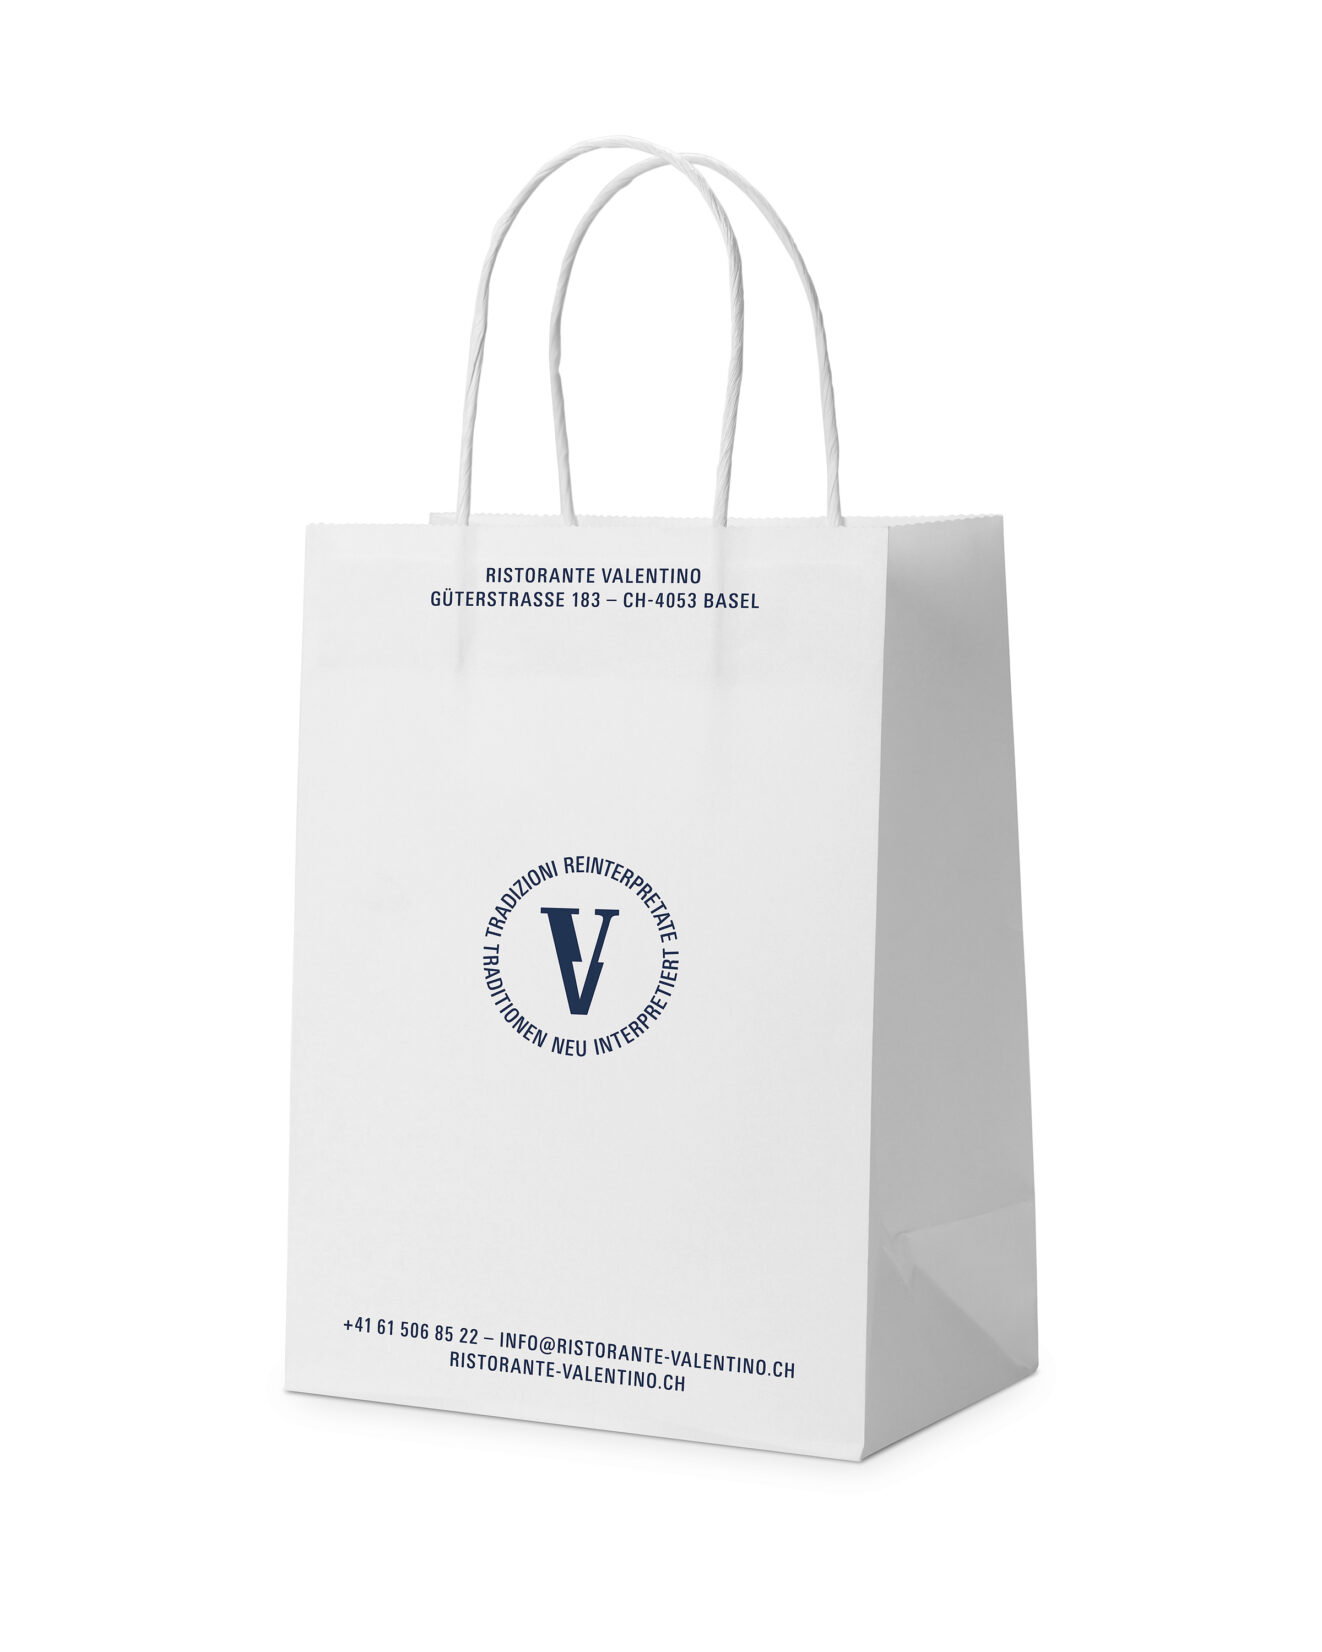 Weisse Papiertasche mit dem Valentino Siegel.